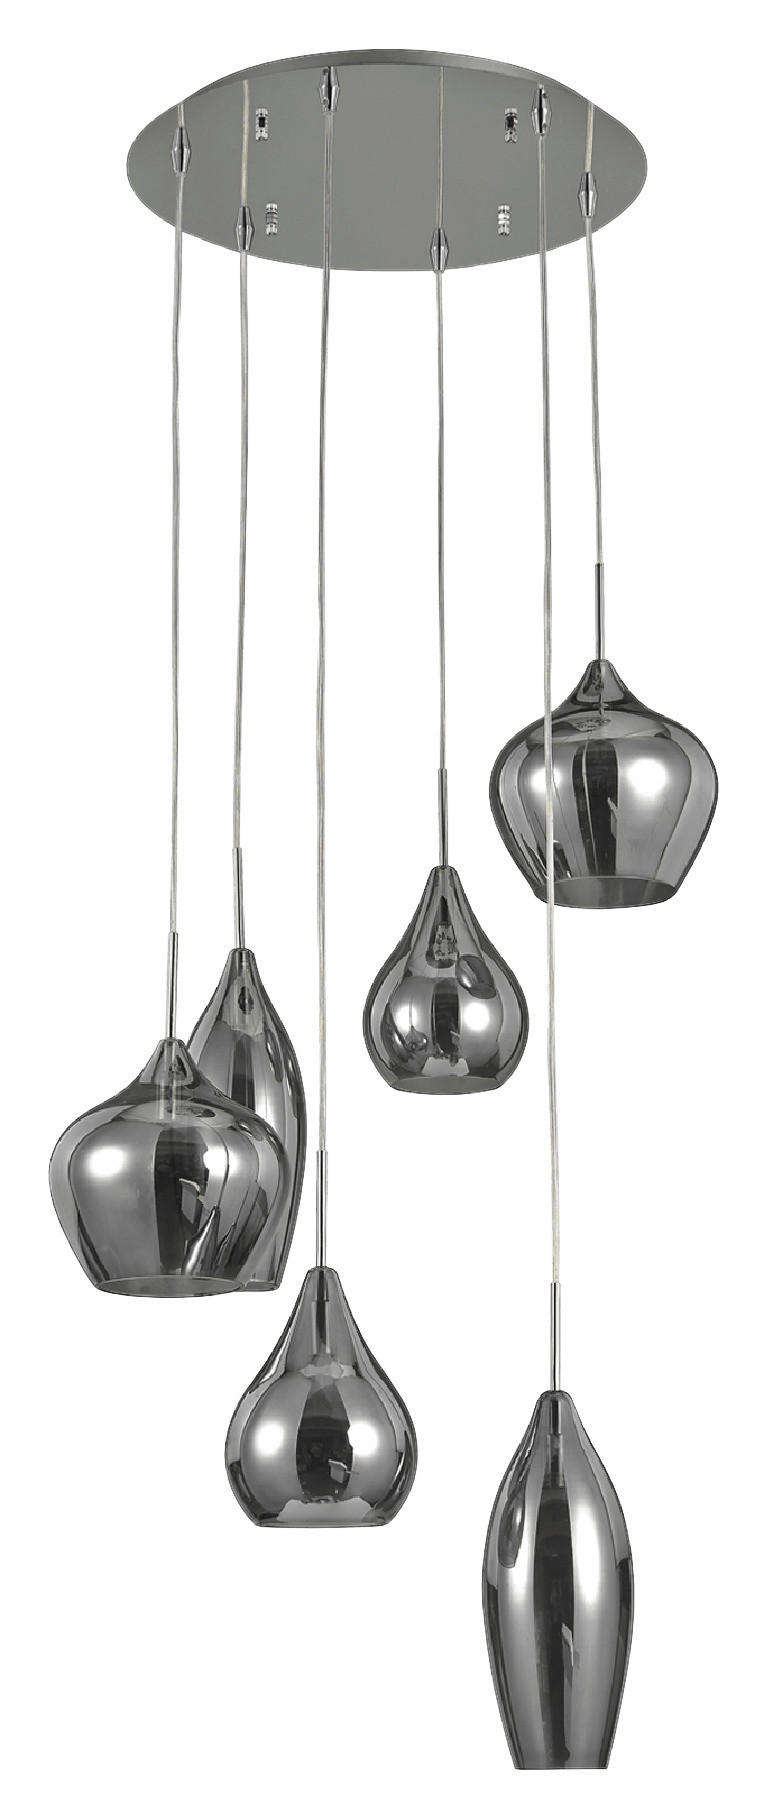 HÄNGELEUCHTE 60/30-135 cm  - Grau, Trend, Glas/Metall (60/30-135cm) - Dieter Knoll